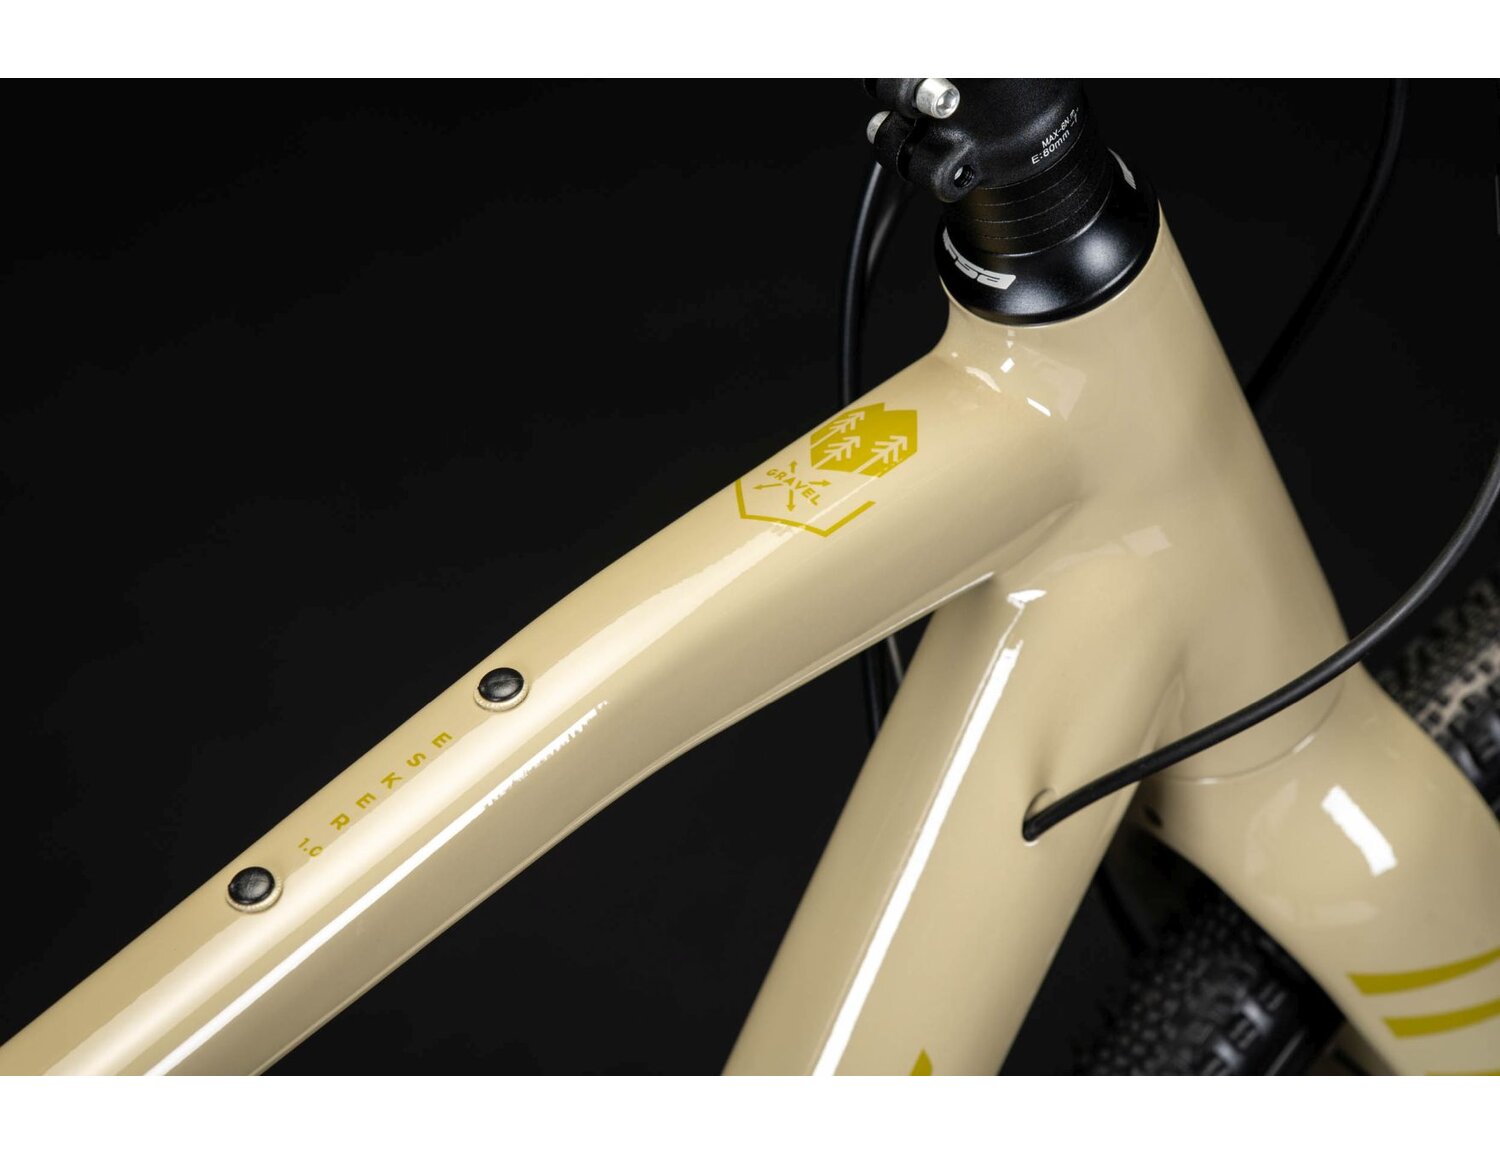  Sztywny aluminiowy widelec oraz opony WTB RIDDLER COMP 700X37C w rowerze gravelowym Kross Esker 1.0 